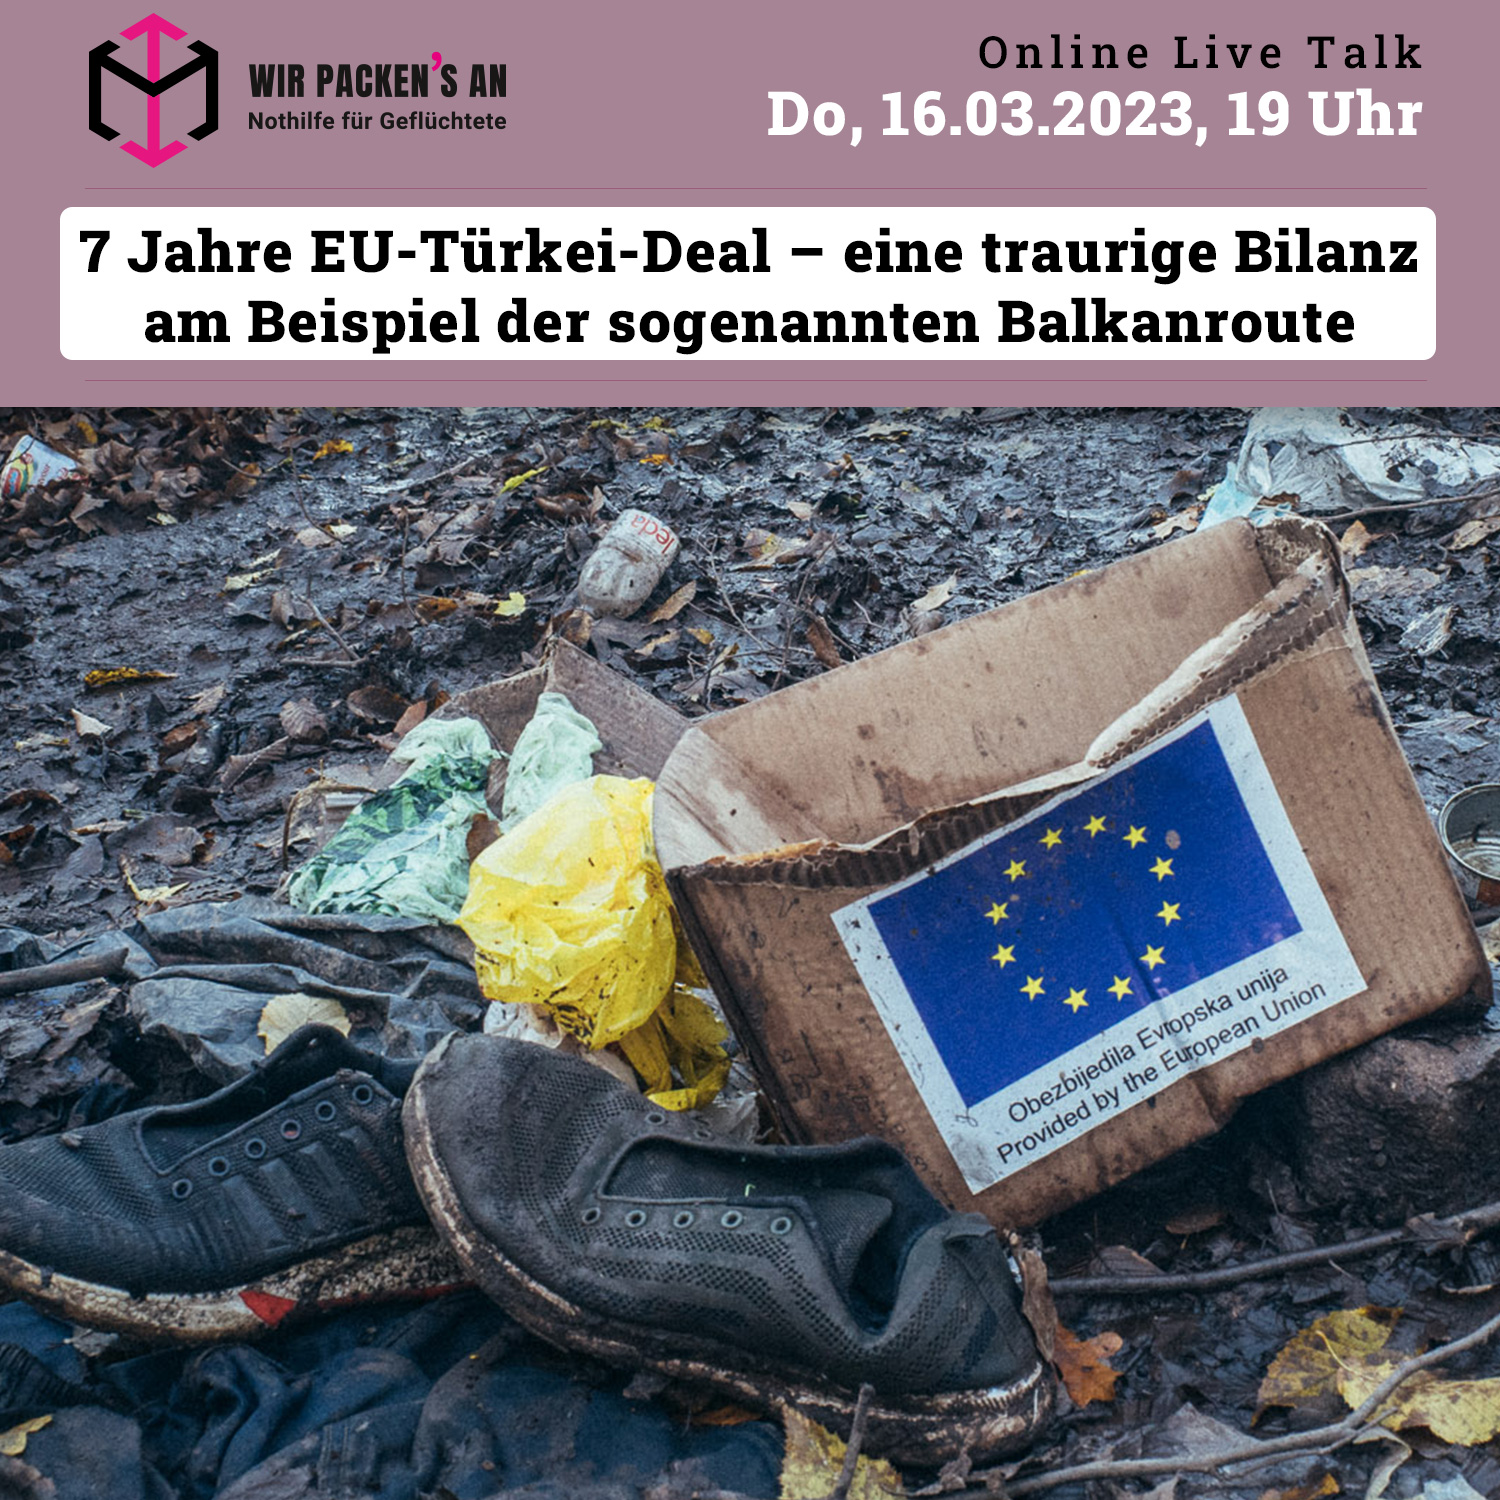 Wir packen's an, 7 Jahre EU-Türkei-Deal – eine traurige Bilanz am Beispiel der sogenannten Balkanroute